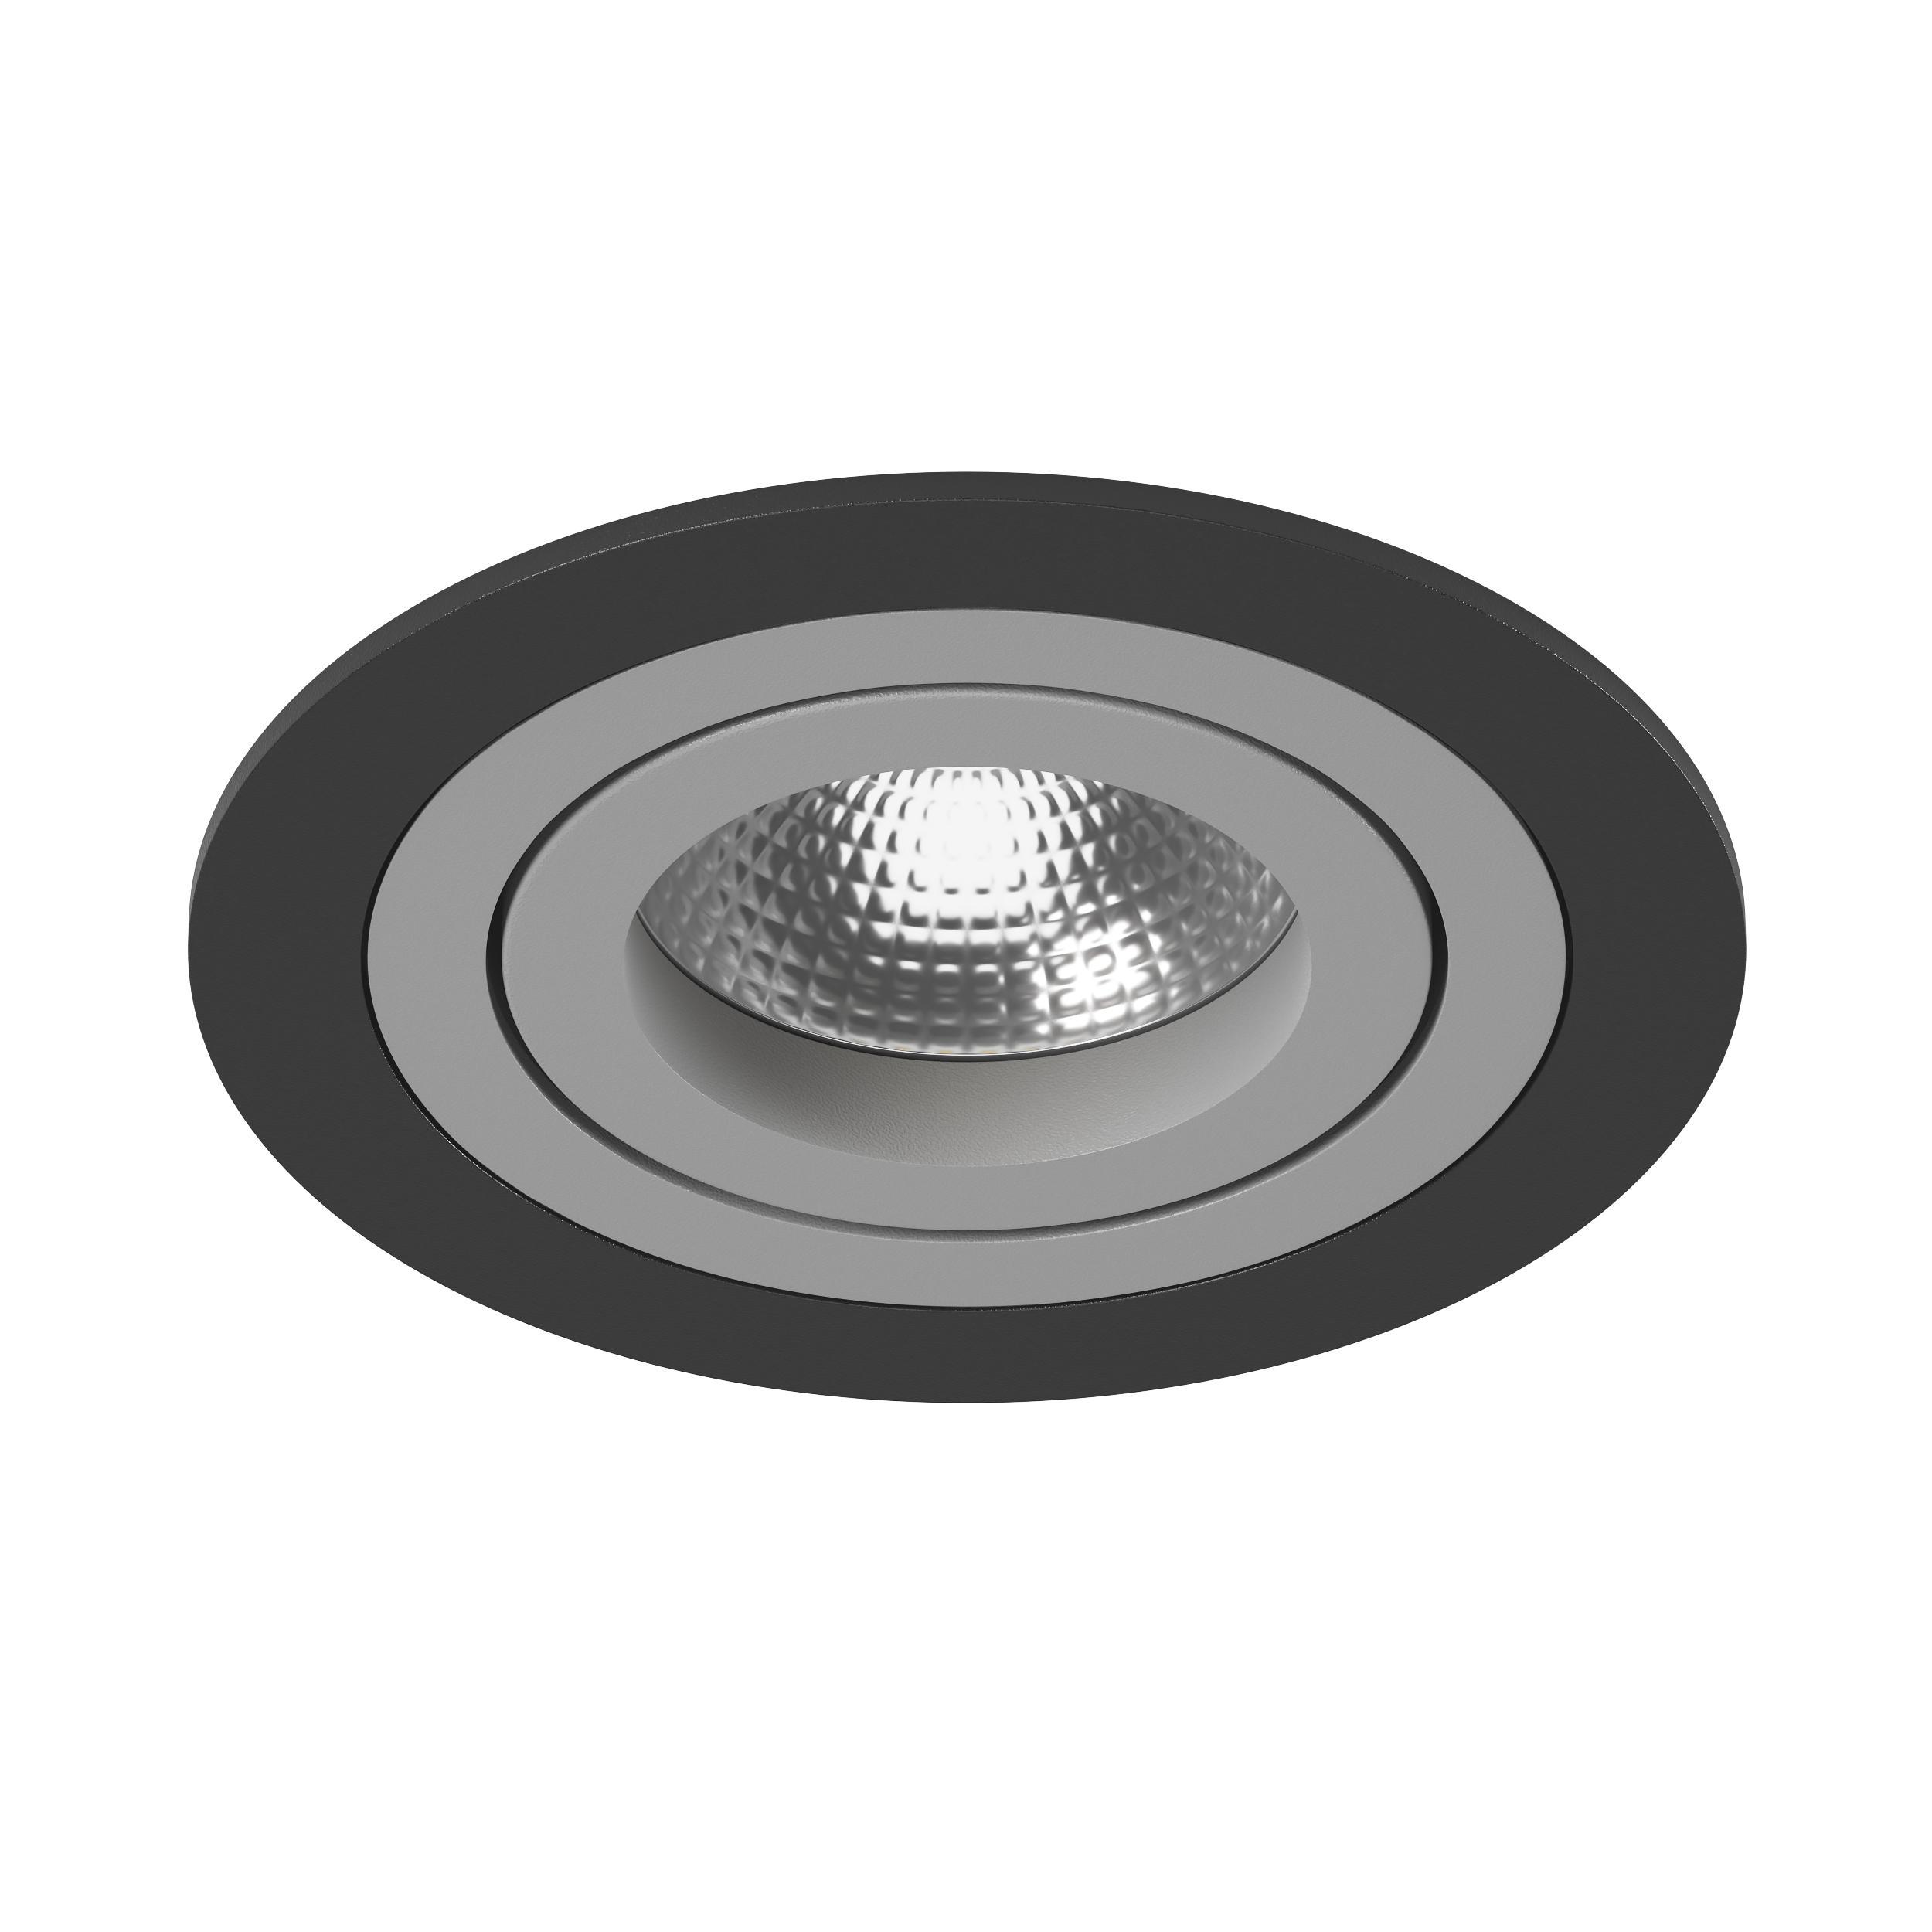 90241430 Светильник точечный встраиваемый Domino под отверстие 82 мм 2.3 м² цвет черный/серый STLM-0146332 LIGHTSTAR